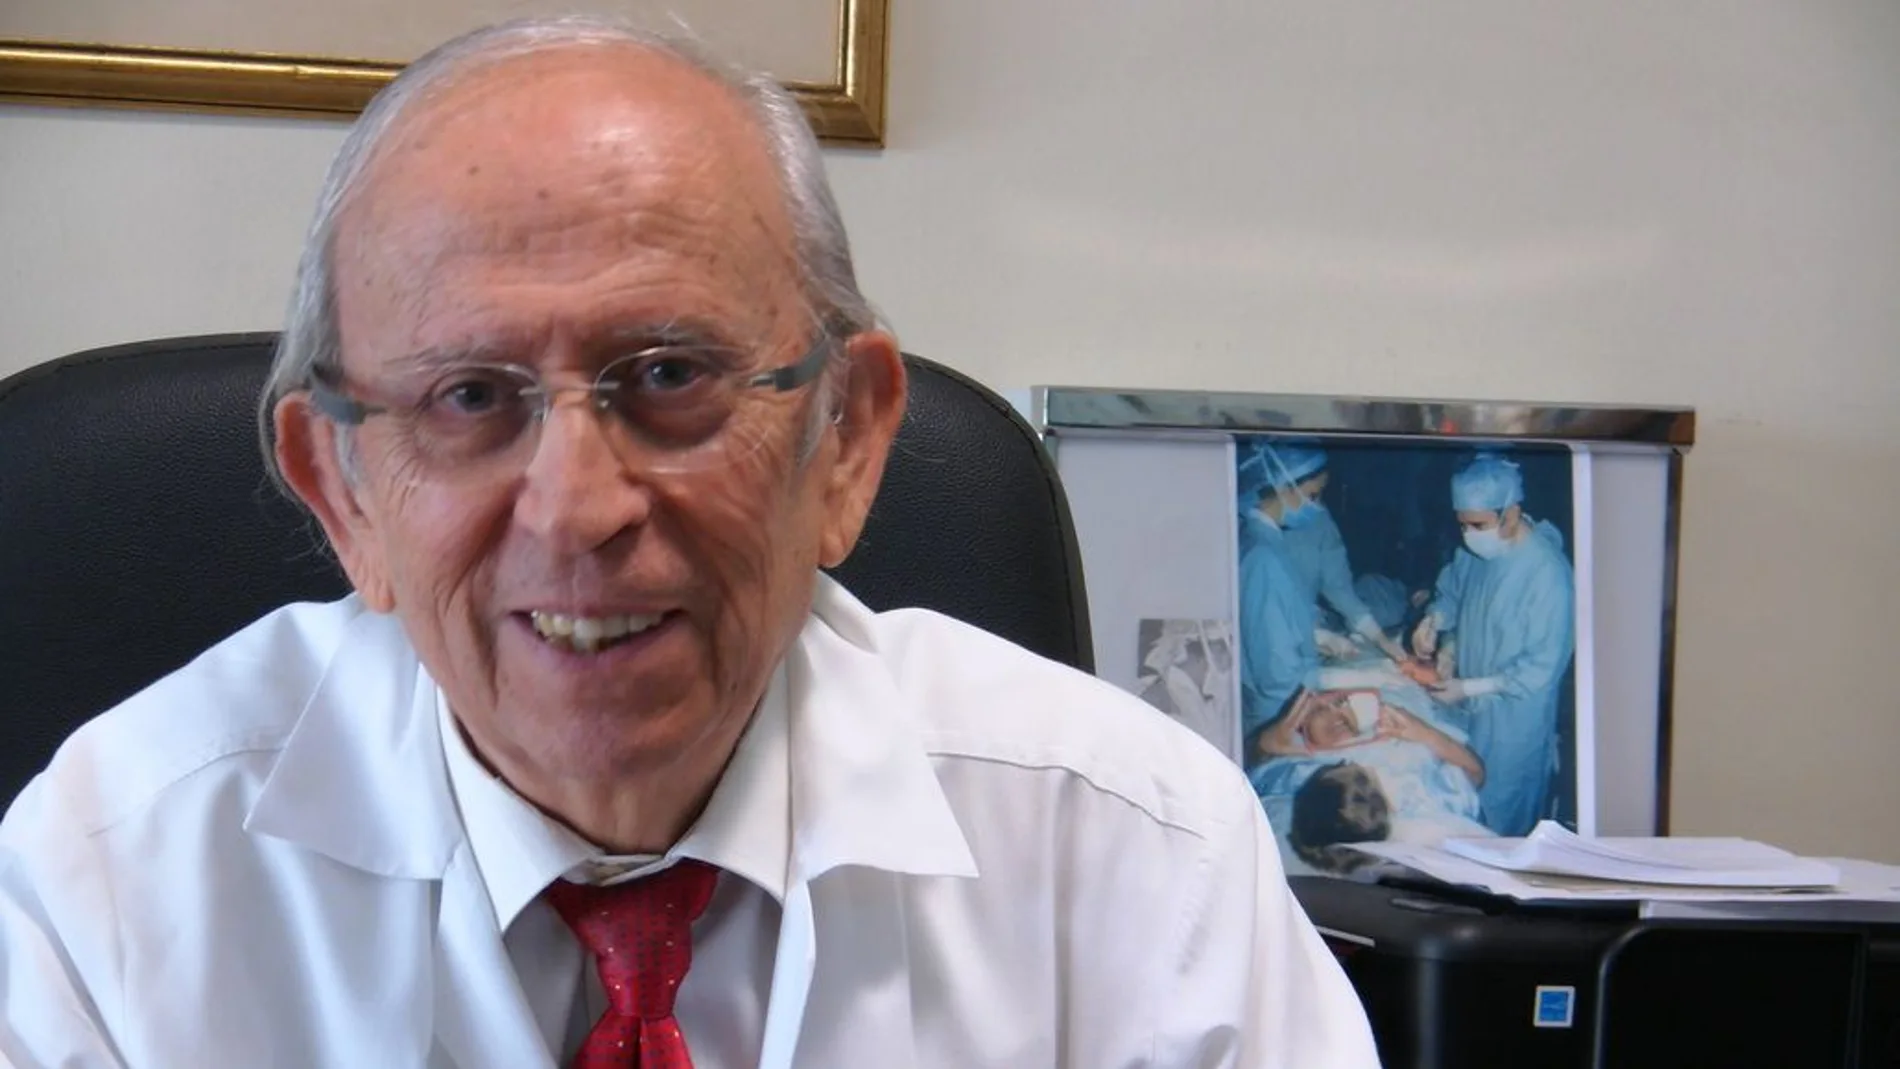 El doctor Ángel Escudero considera que no hay terapia más “alternativa” que la química